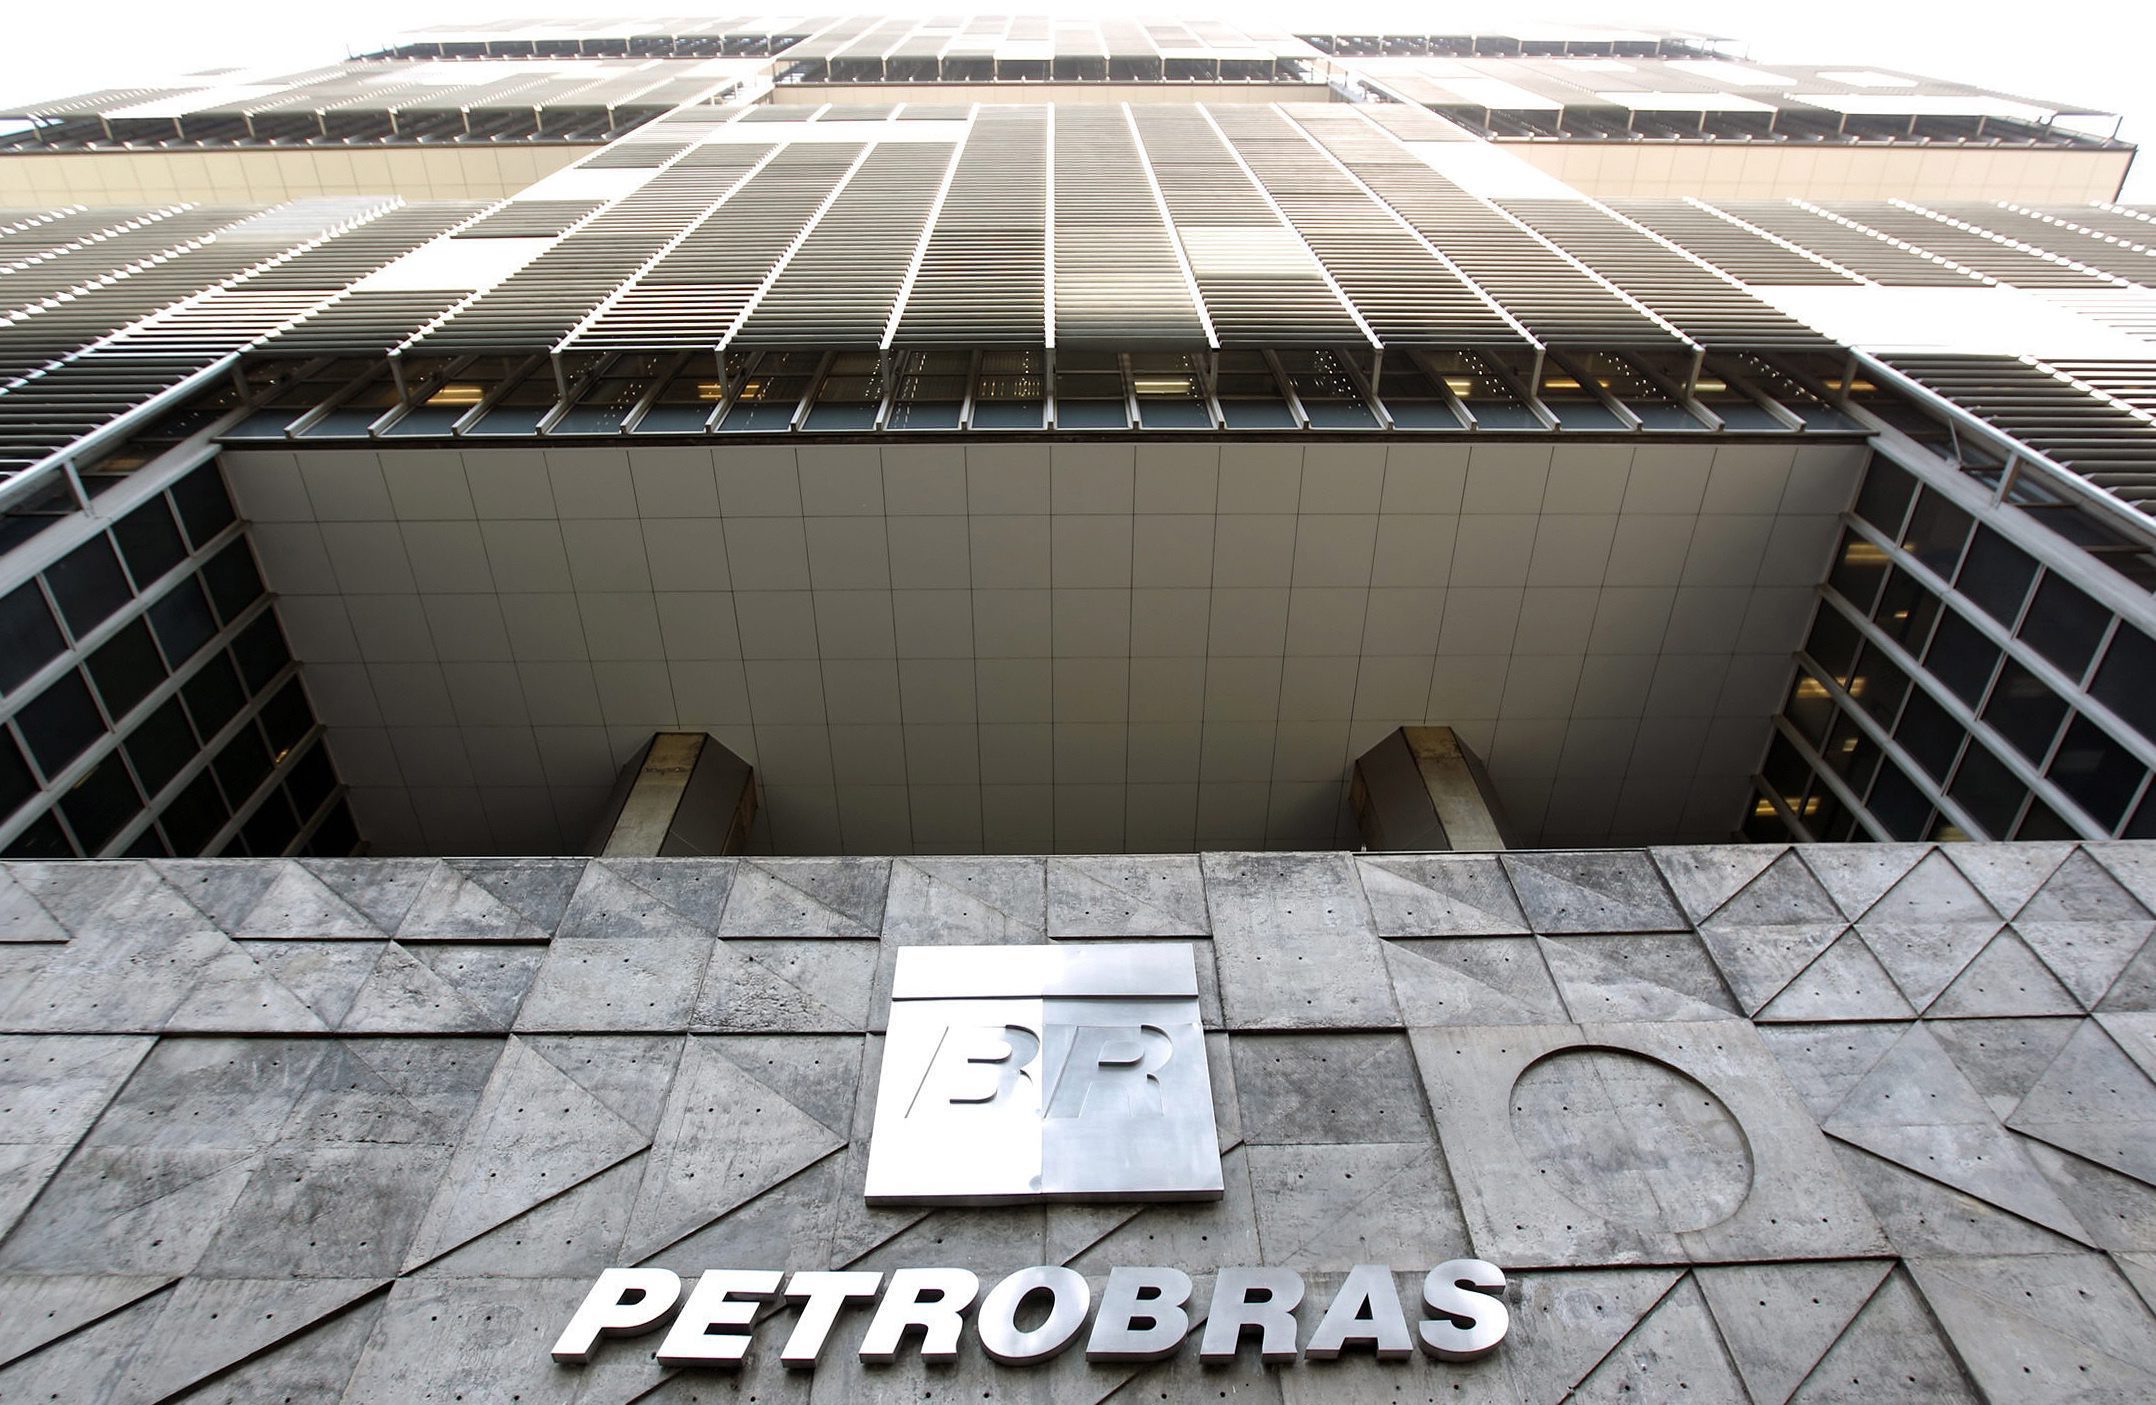 Πάνω από 2 δισ. δολάρια στοίχισε στην Petrobras το σκάνδαλο διαφθοράς